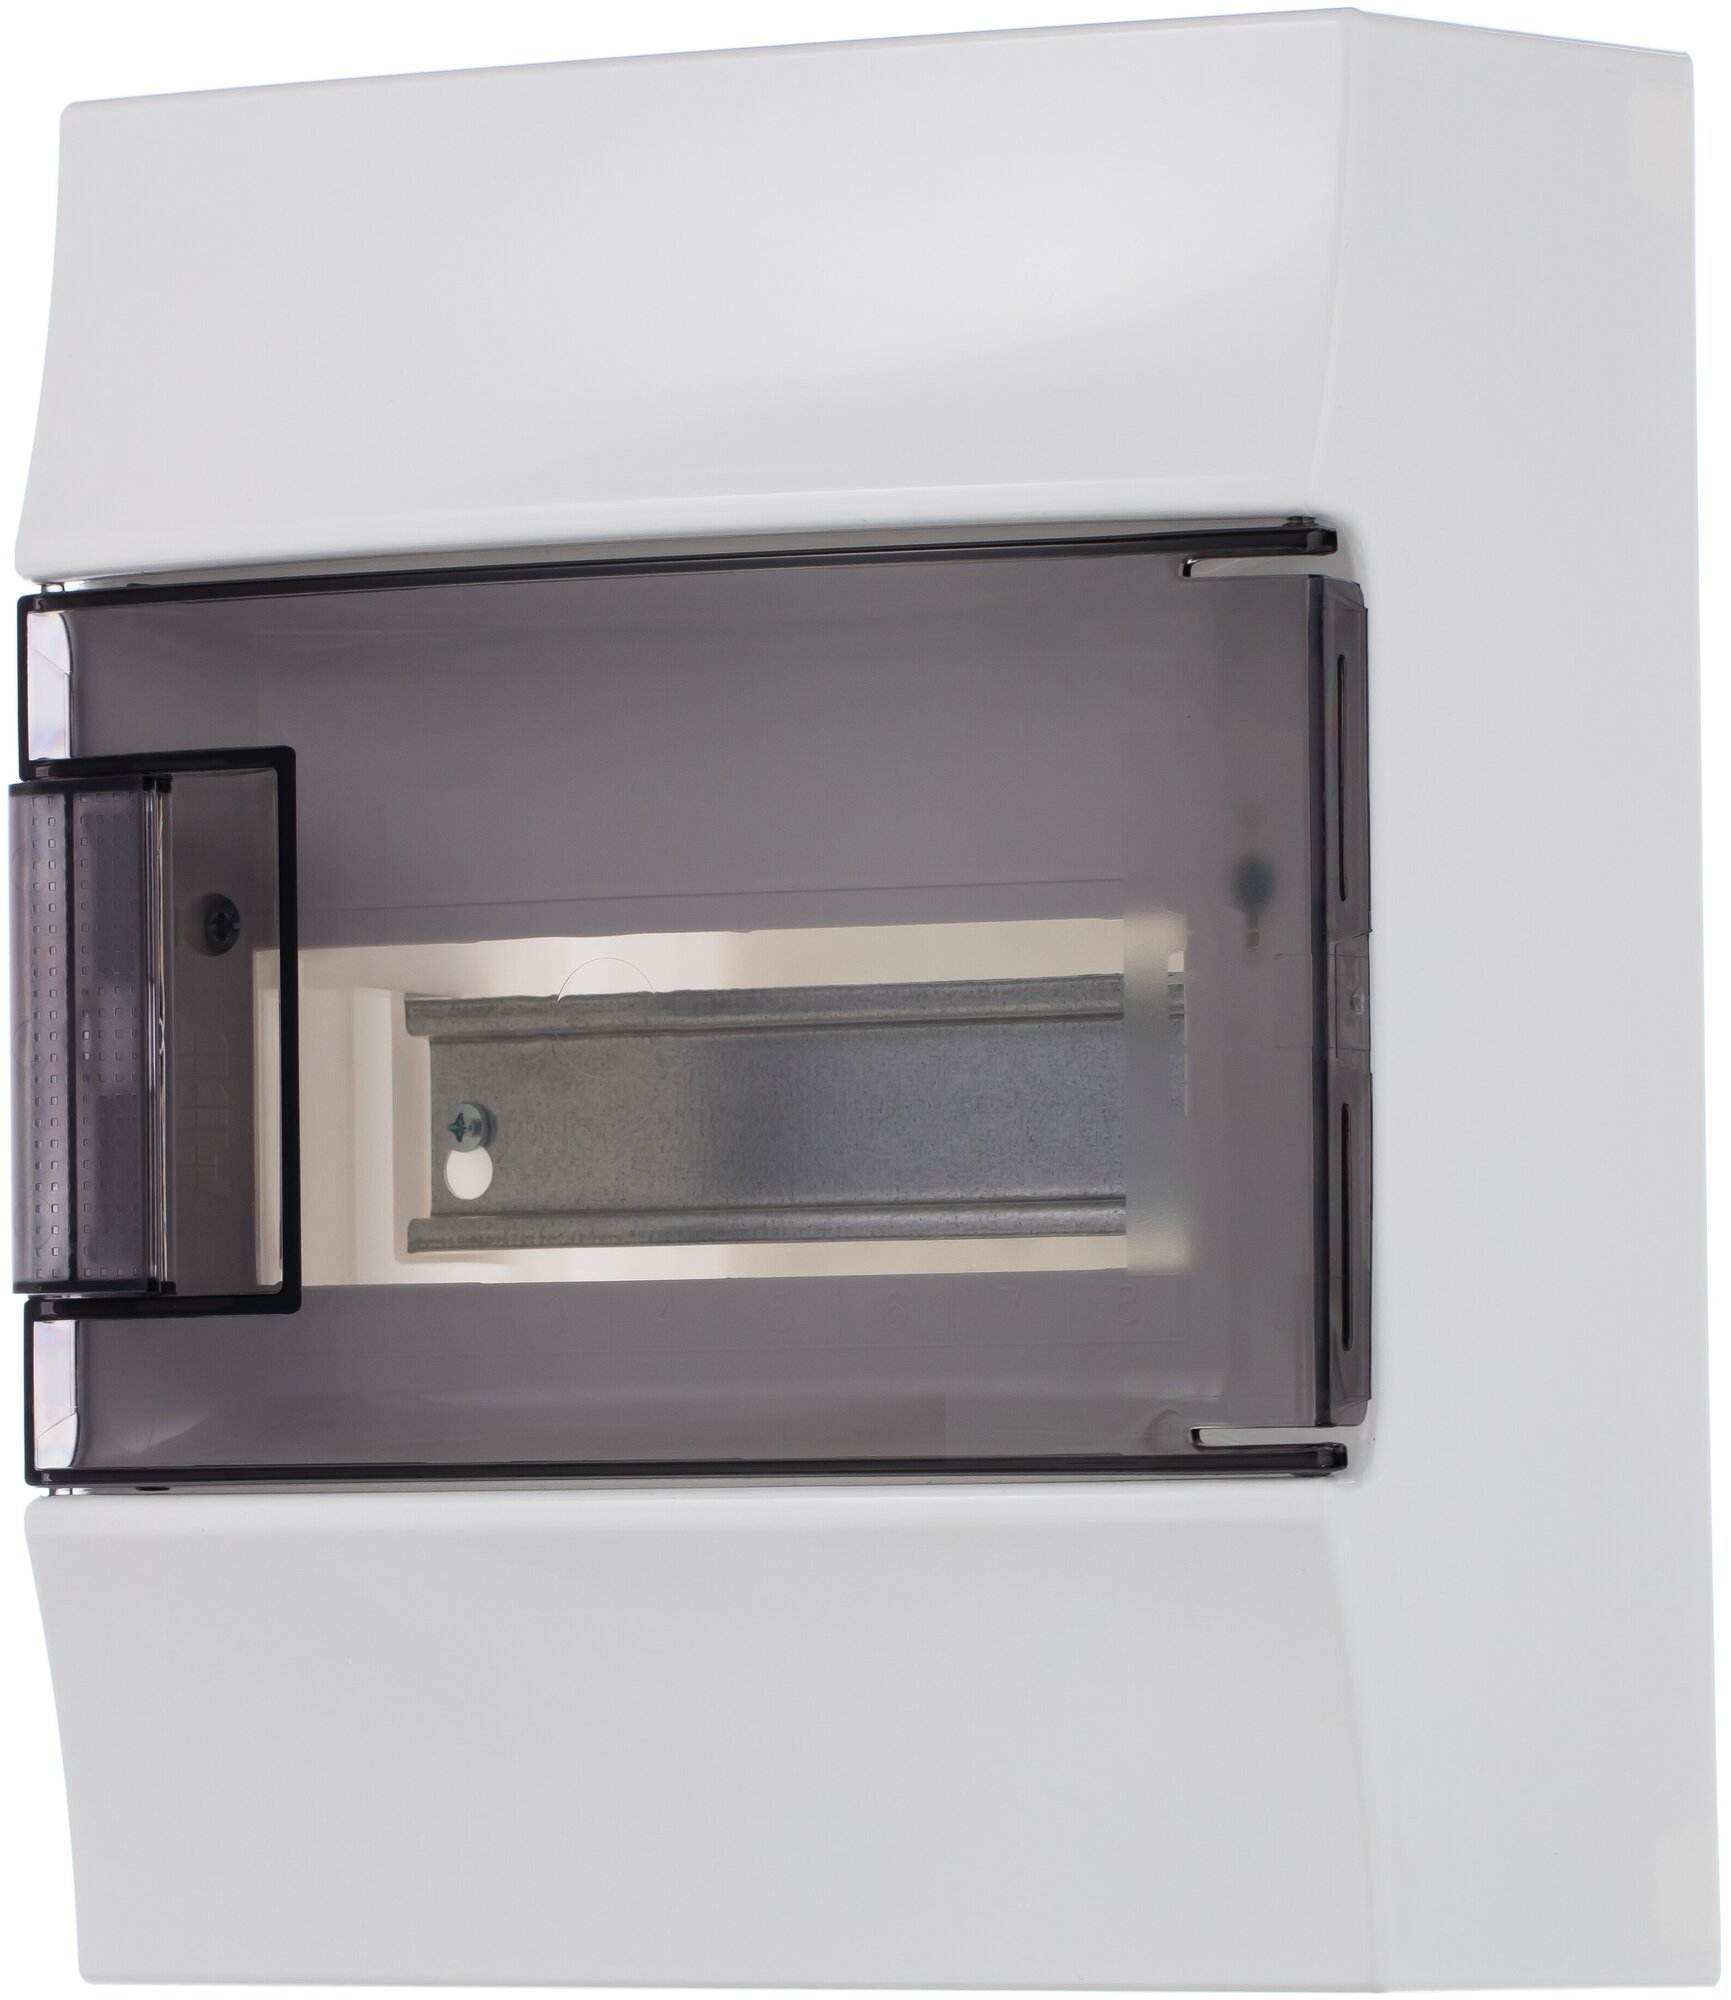 Щит распределительный настенный ABB Mistral41 8М прозрачная дверь c клеммниками (1SPE007717F9991)